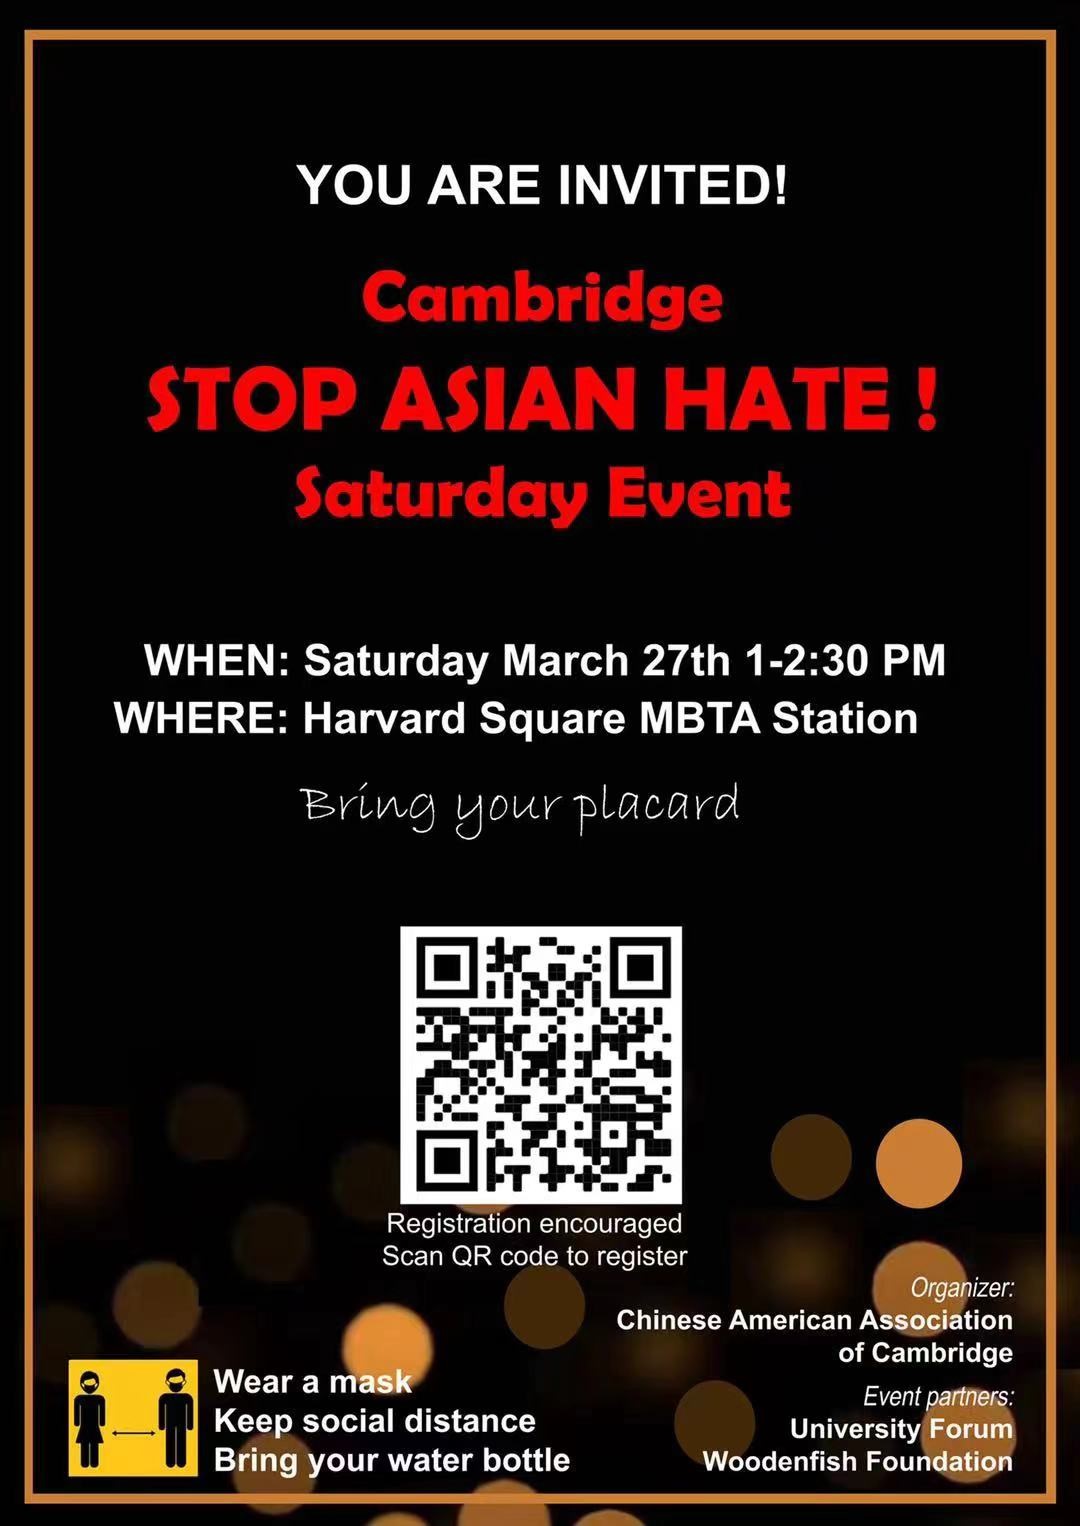 华裔组织将于本周六分别在马拉松沿线和哈佛广场举行示威活动